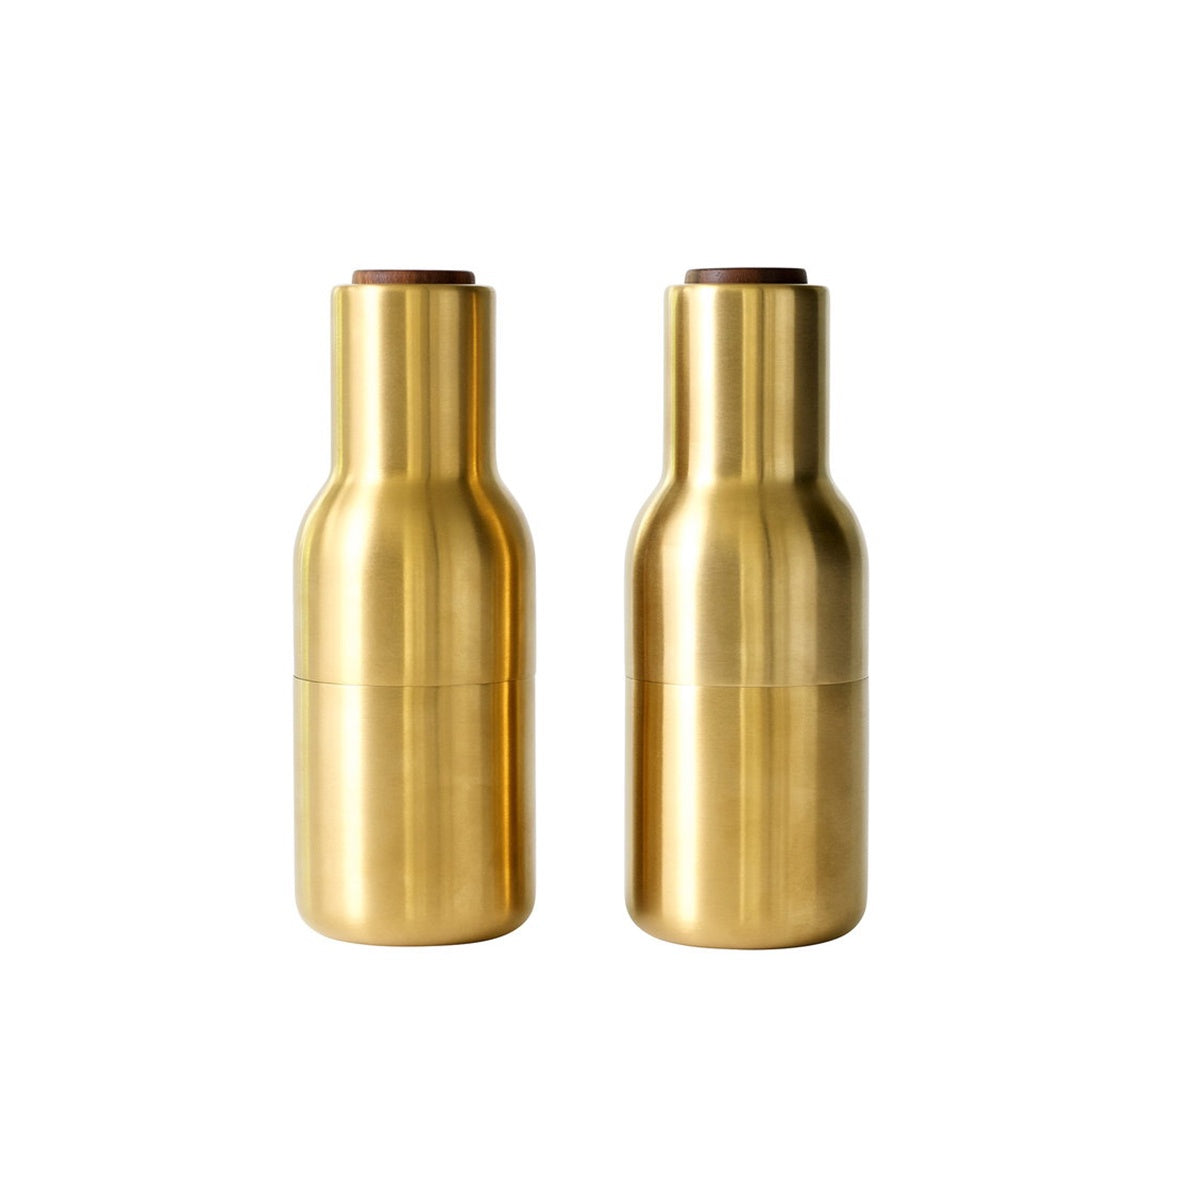 Bottle Grinder Set - Brushed Brass Gold